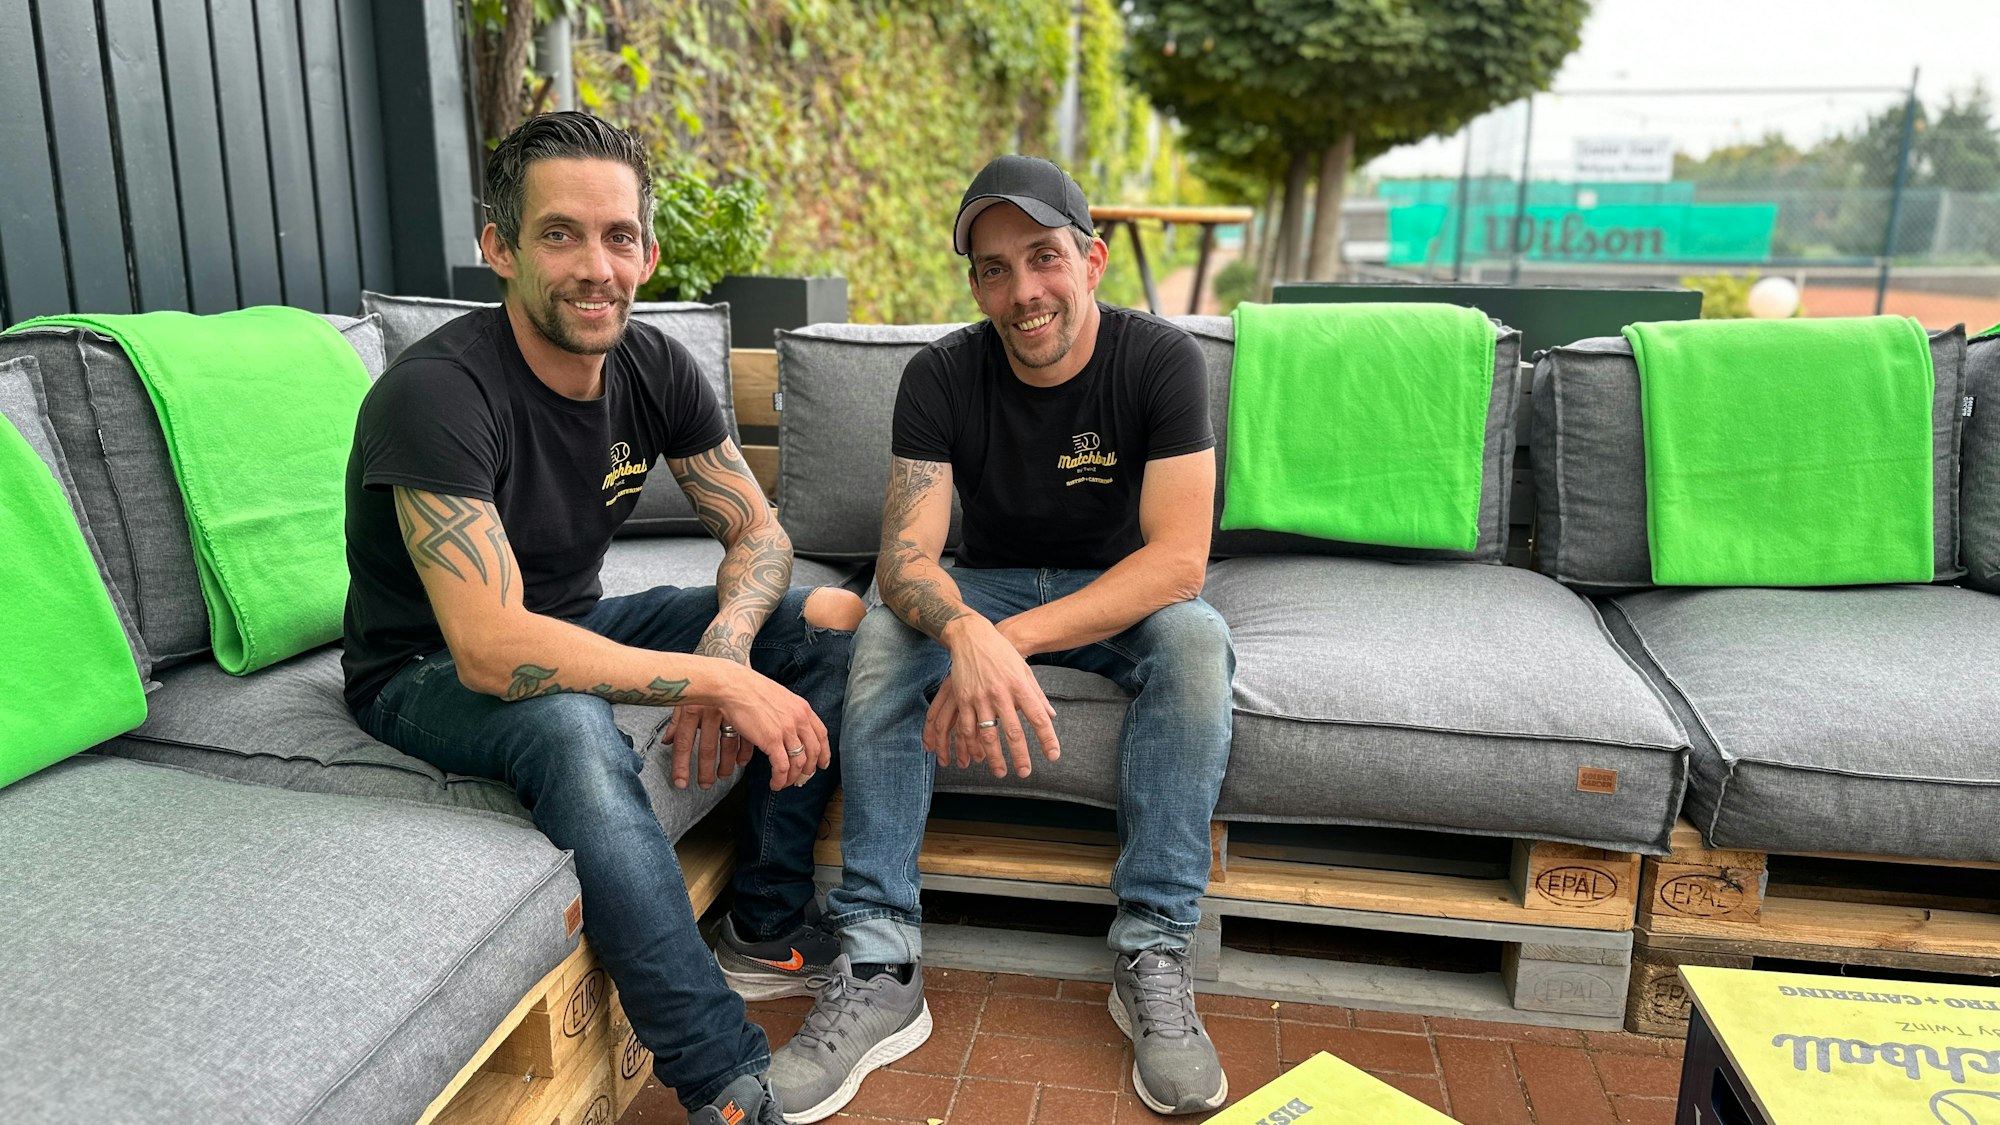 Zwei junge Männer mit identischen Shirts, es sind Zwillingsbrüder, sitzen auf einer Sofagarnitur auf einer Terrasse. Im Hintergrund sind Tennisplätze zu sehen.